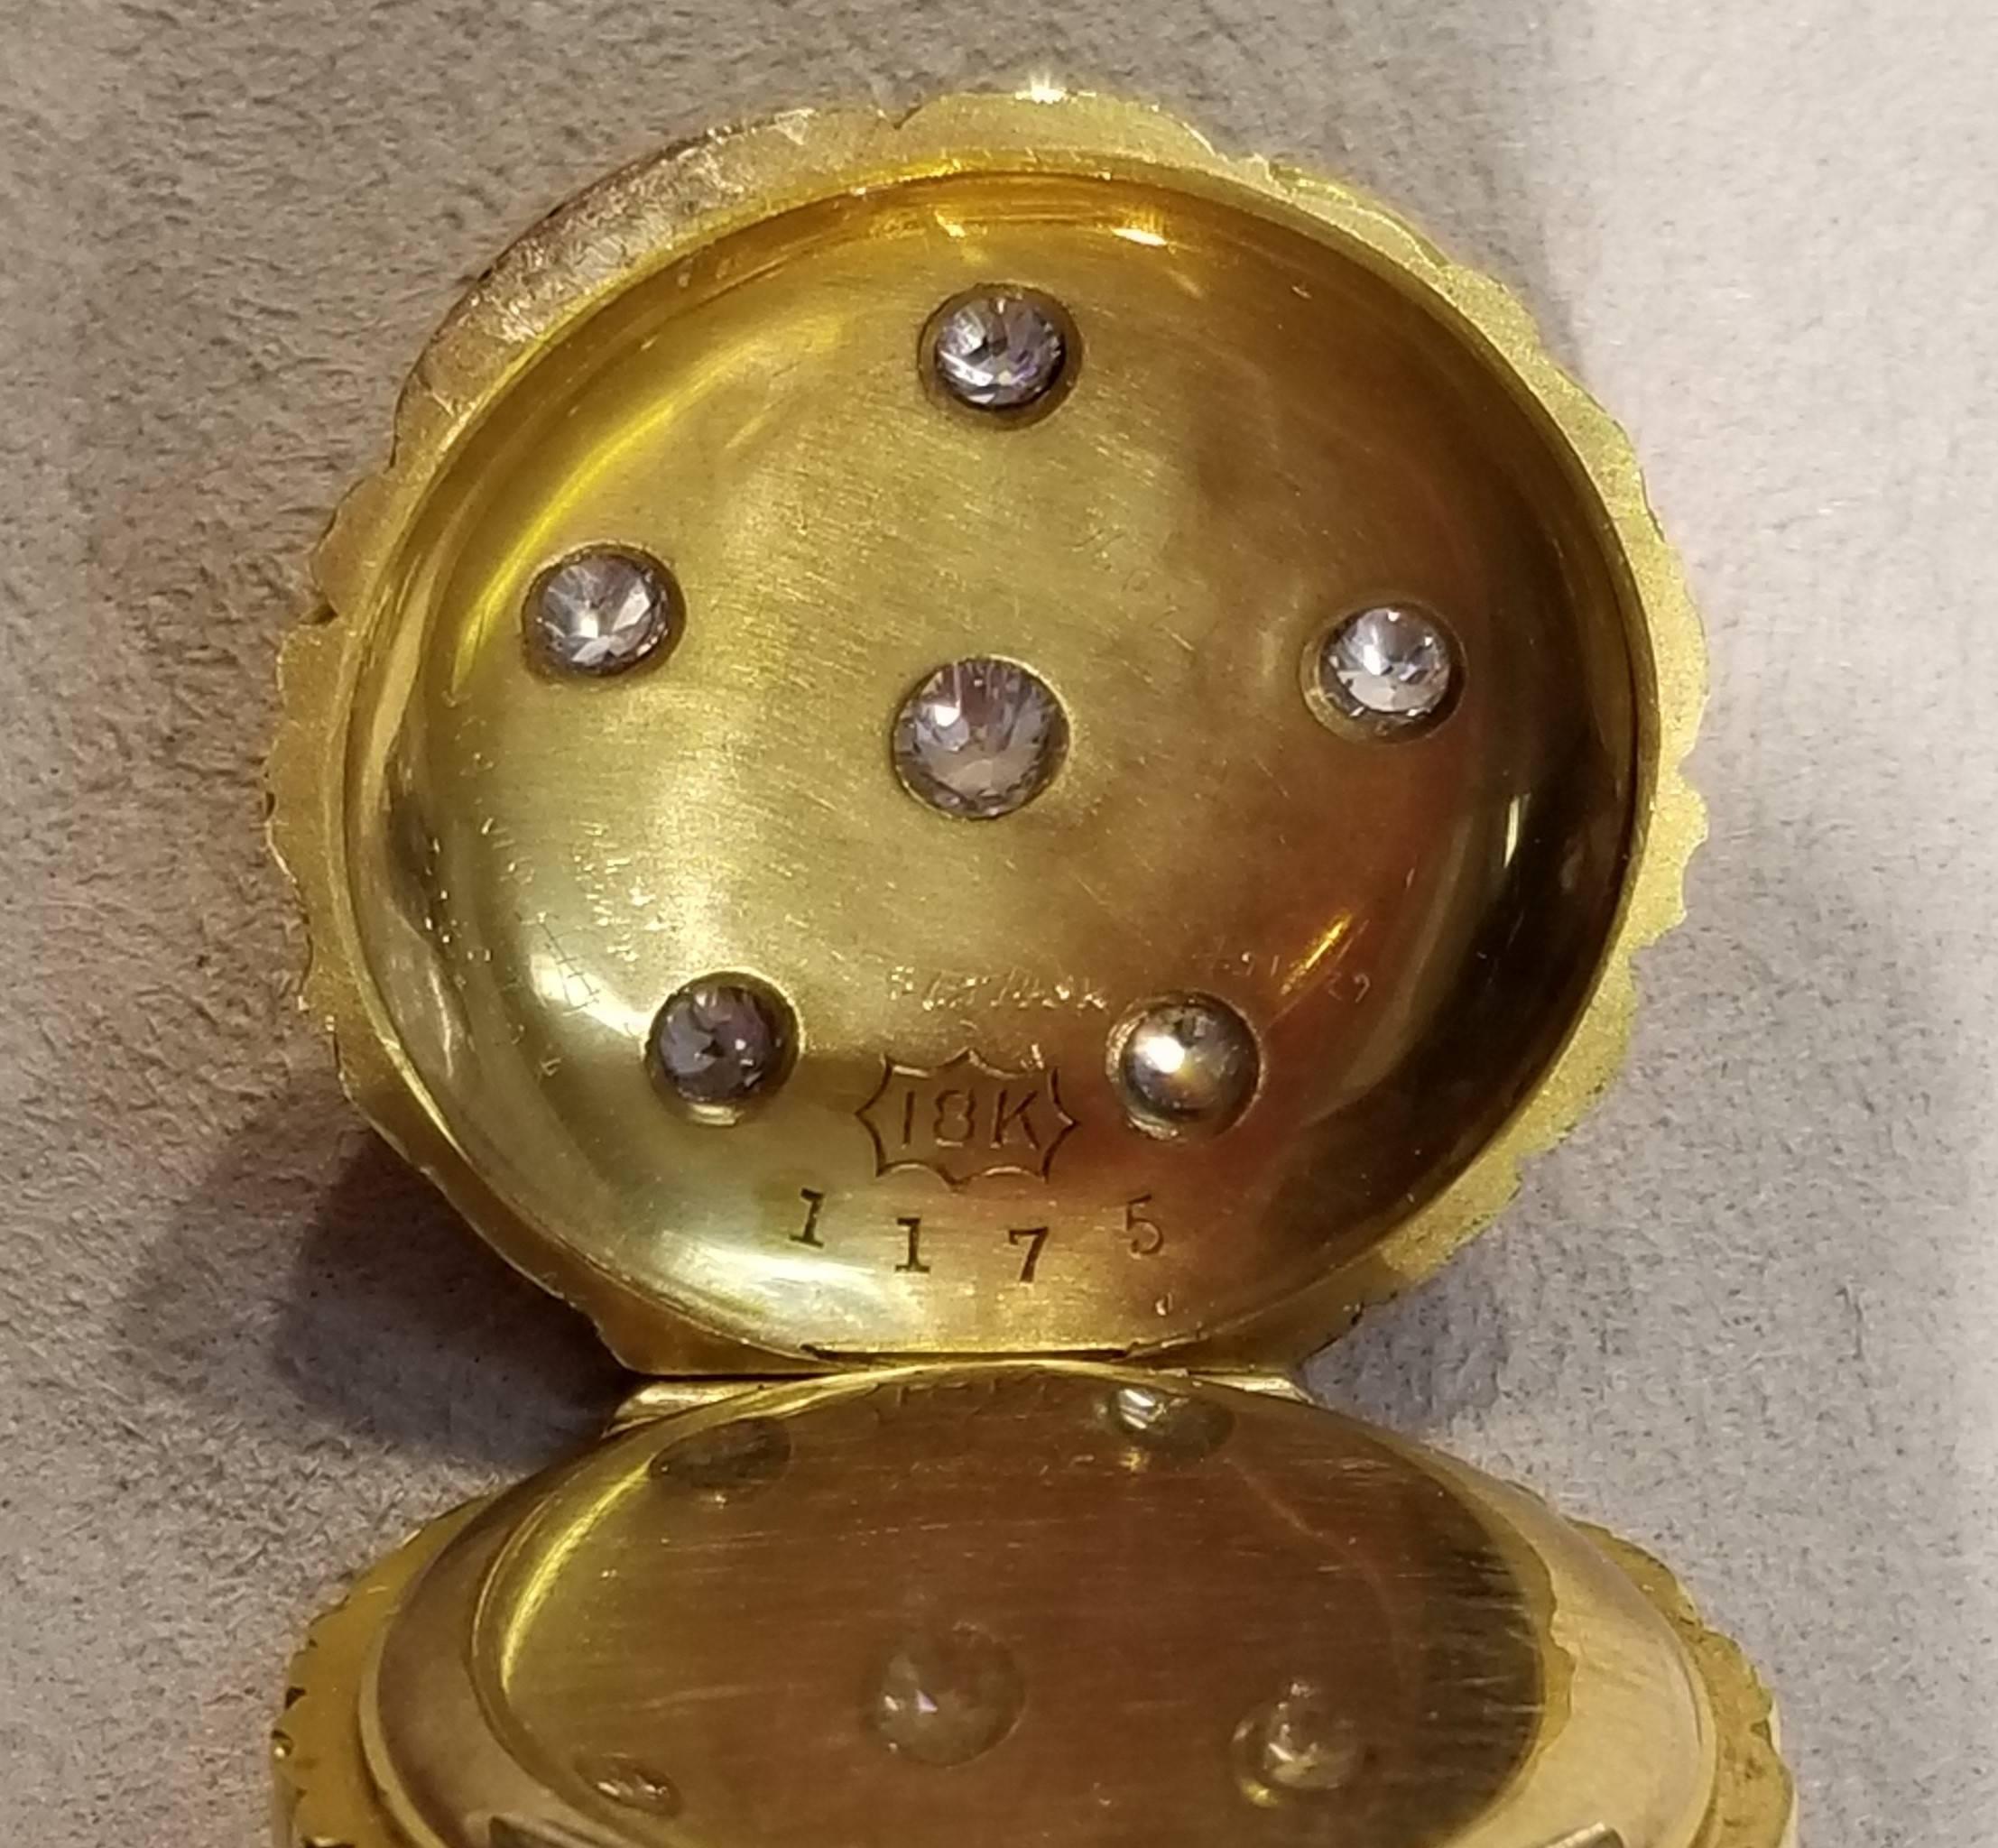 14 Karat Yellow Gold Dragon Lapel Pin with 18 Karat Yellow Gold Watch 6